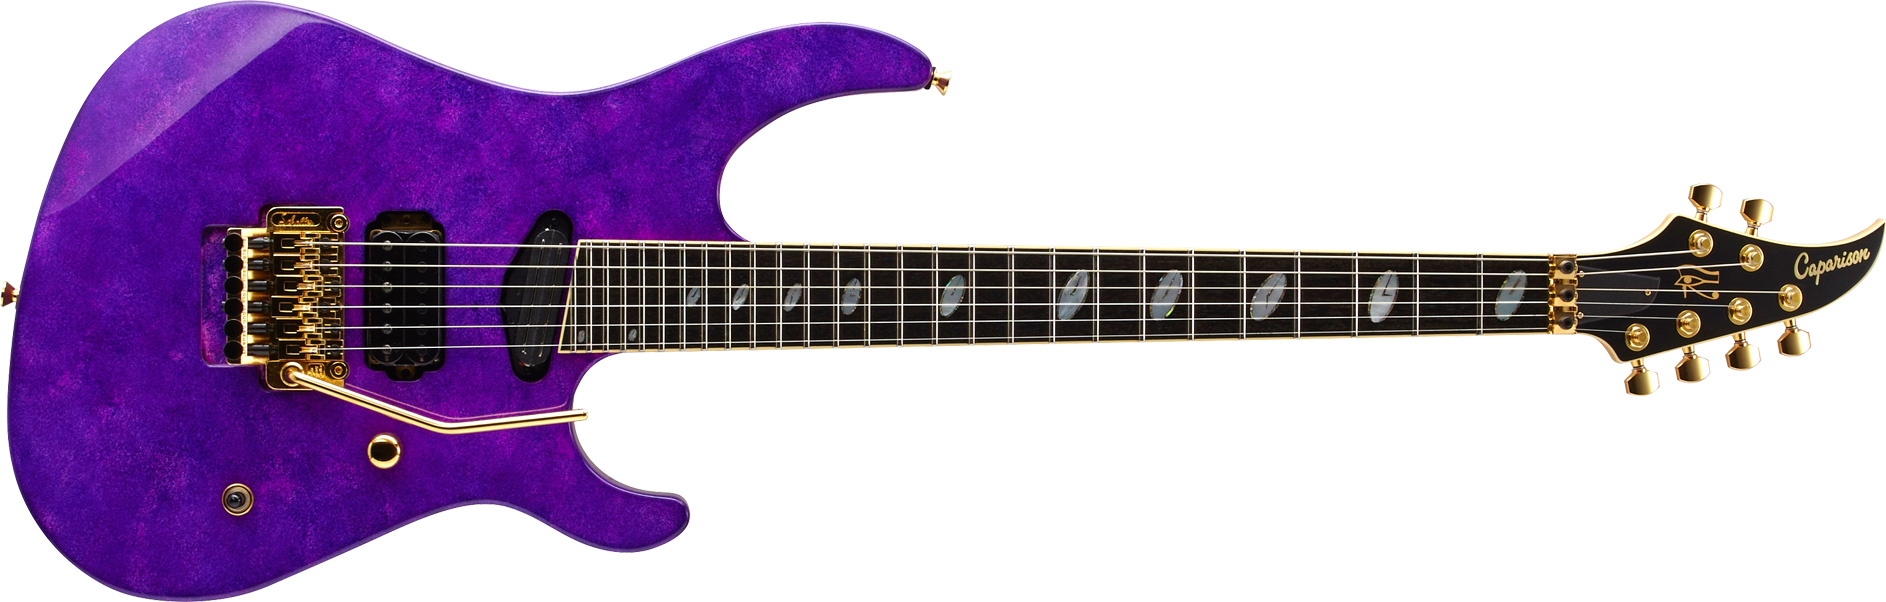 Caparison Guitars 生産終了モデル